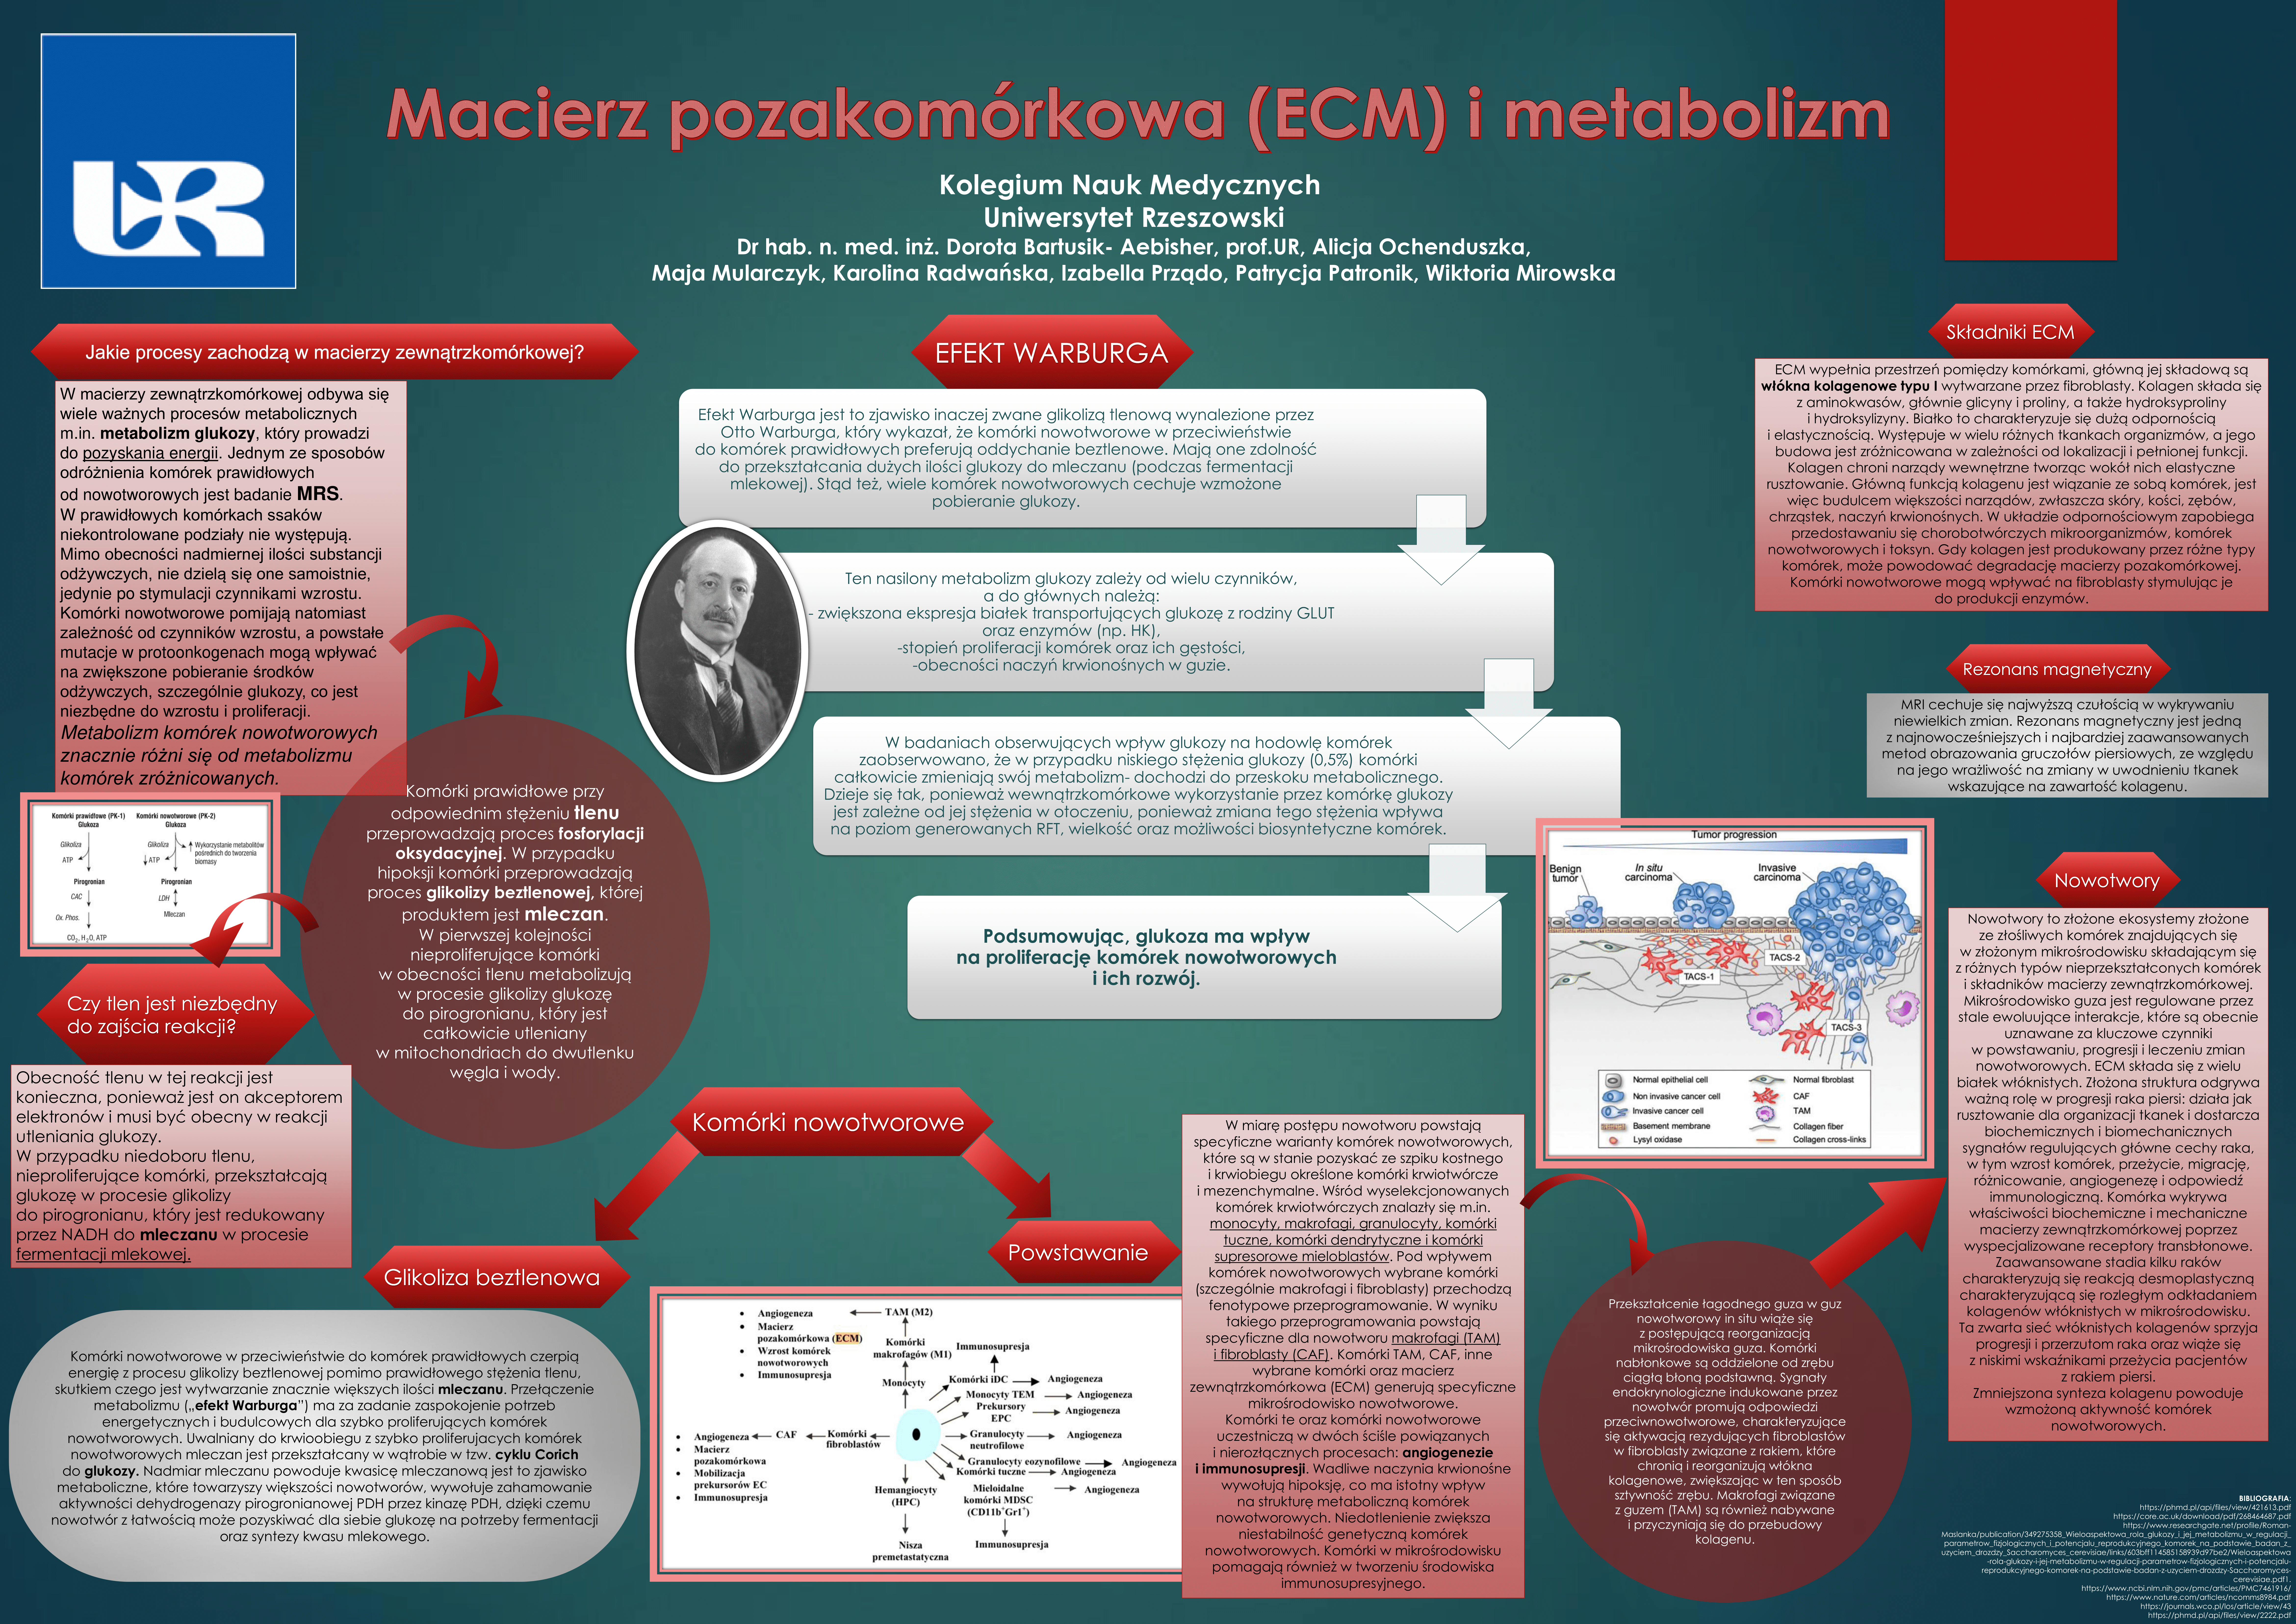 Macierz Pozakomórkowa (ECM) i metabolizm.png [14.67 MB]